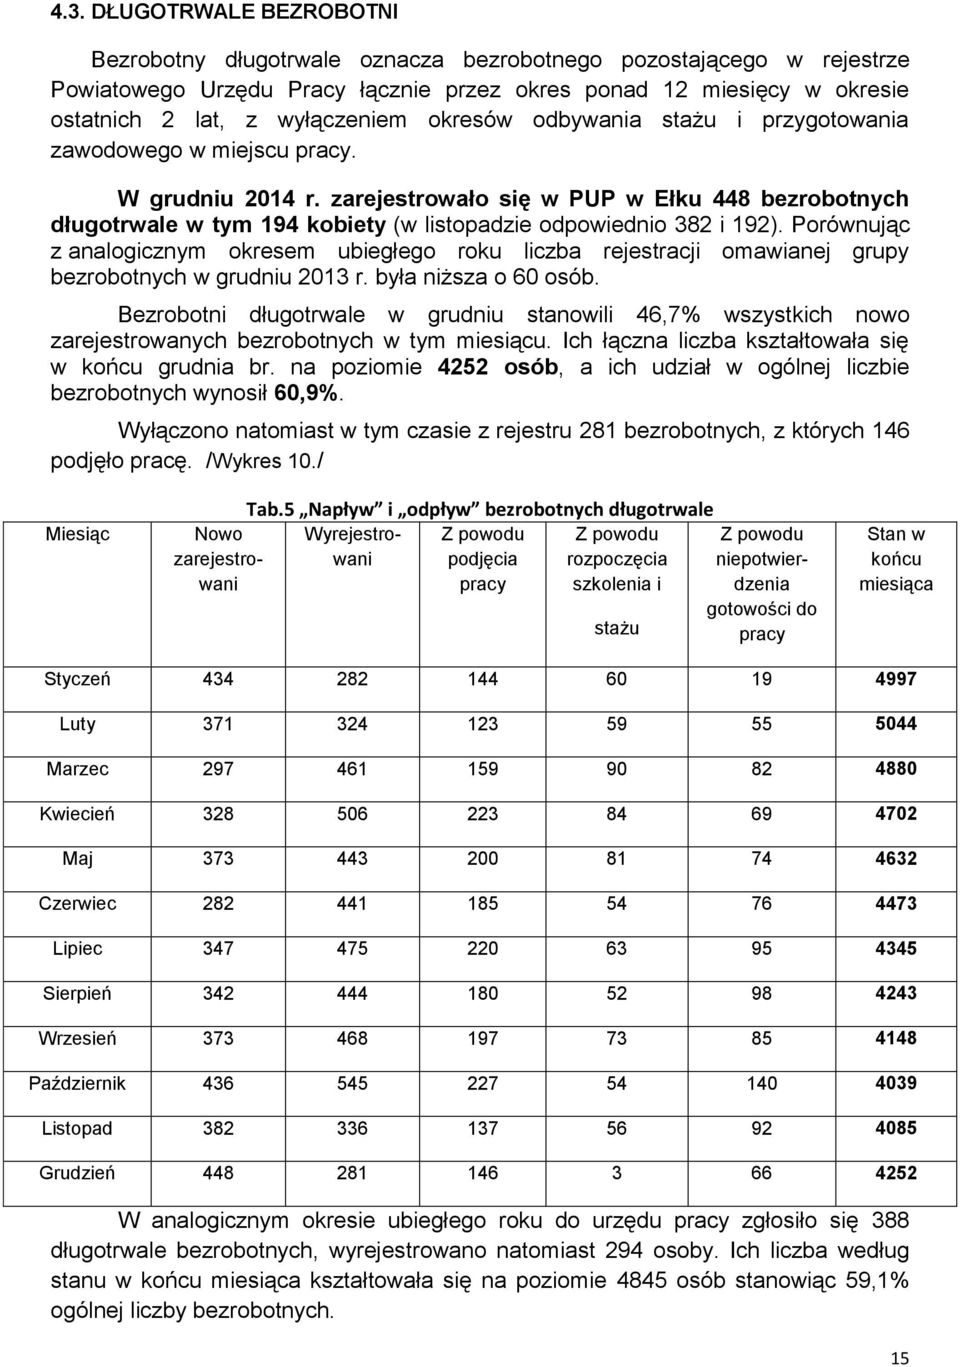 zarejestrowało się w PUP w Ełku 448 bezrobotnych długotrwale w tym 94 kobiety (w listopadzie odpowiednio 382 i 92).